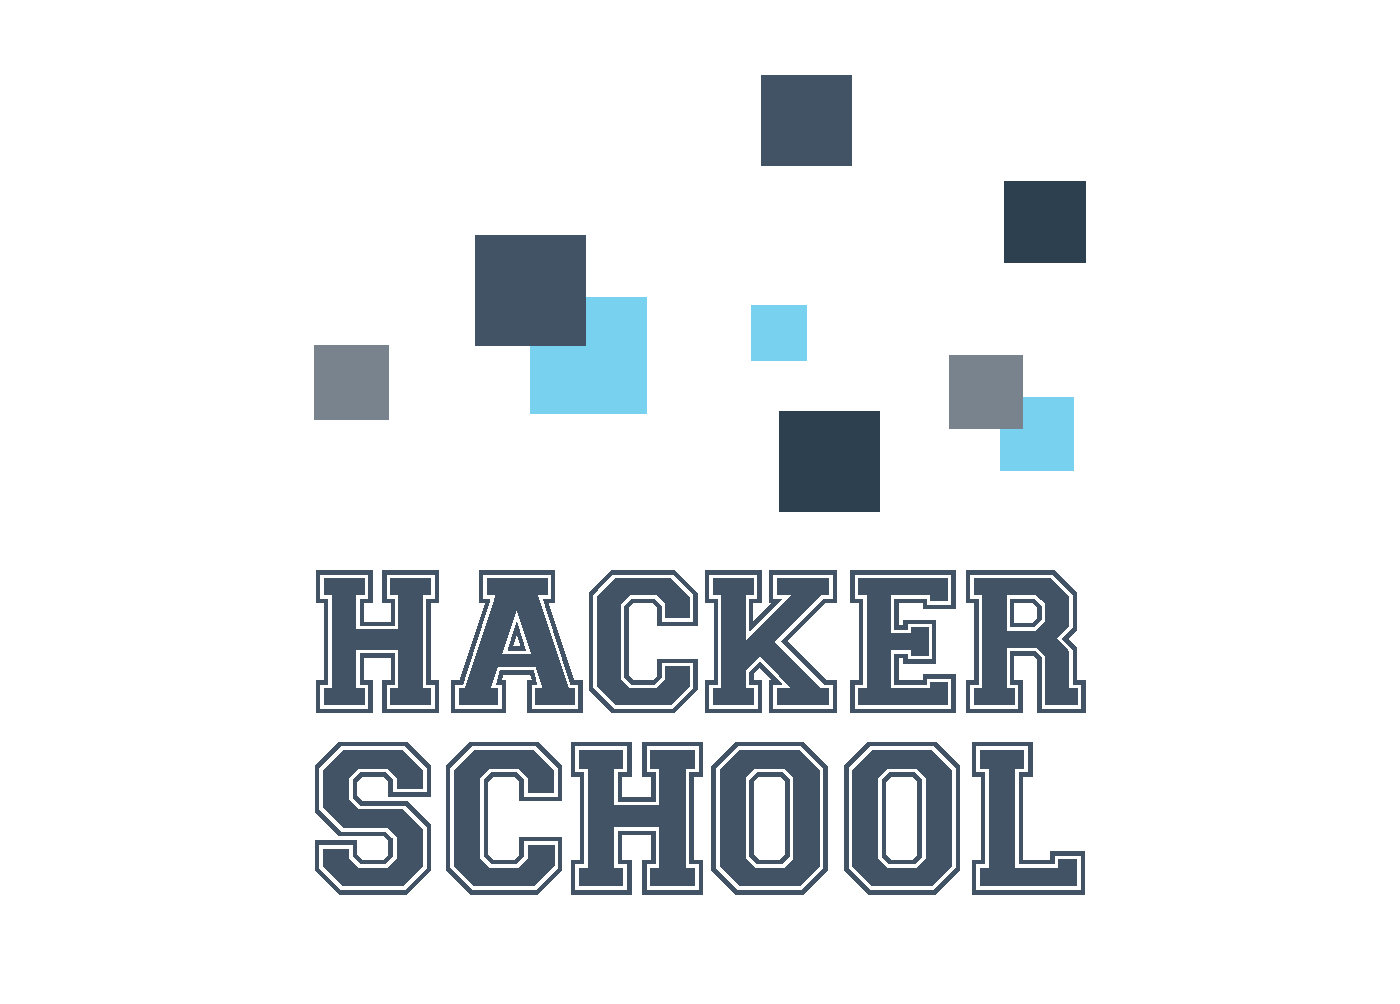 HackerSchool